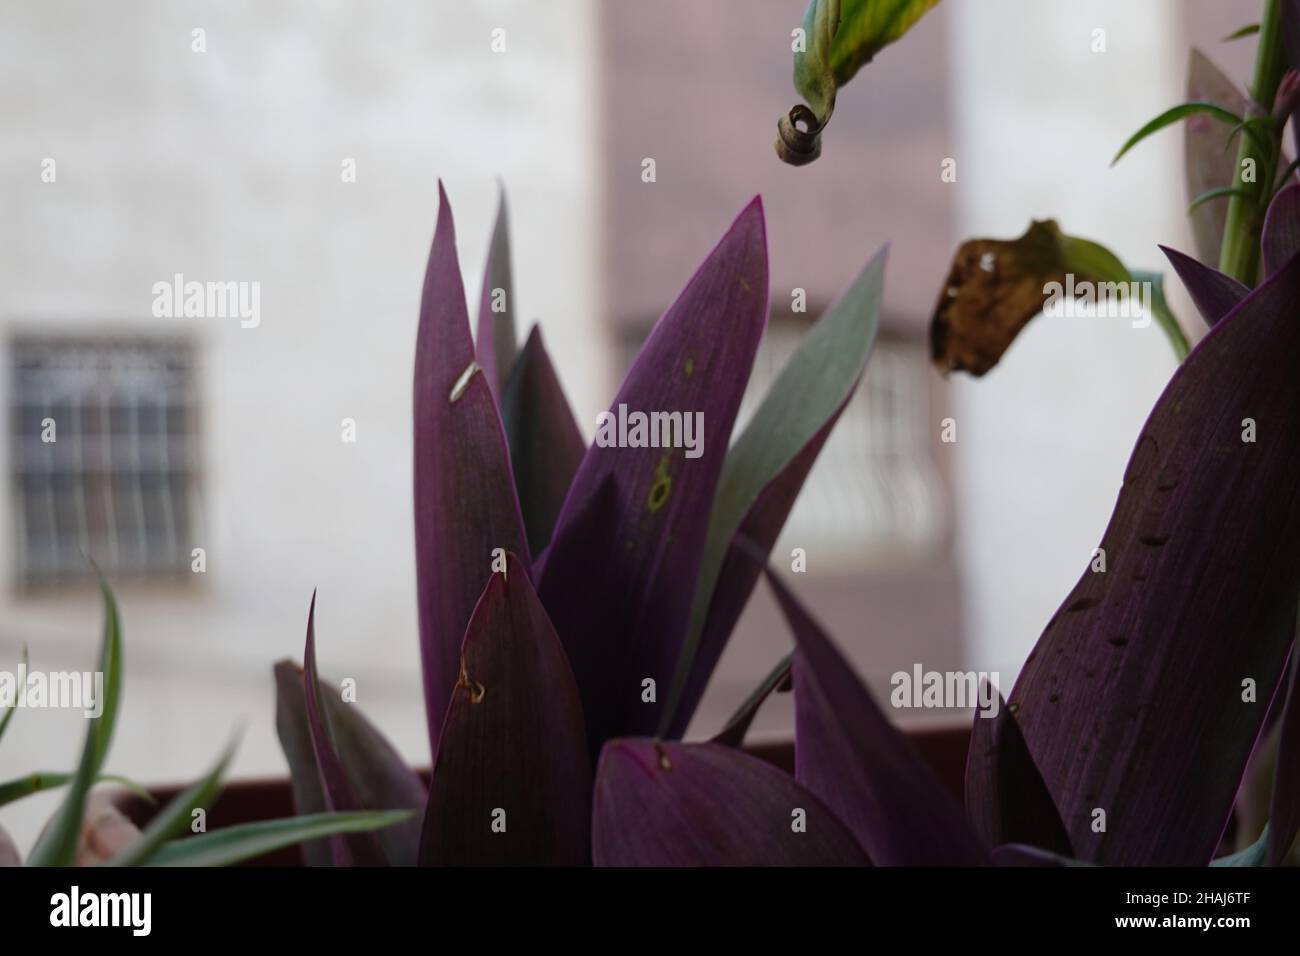 Closeup shot of purple Tradescantia plants in a garden Stock Photo